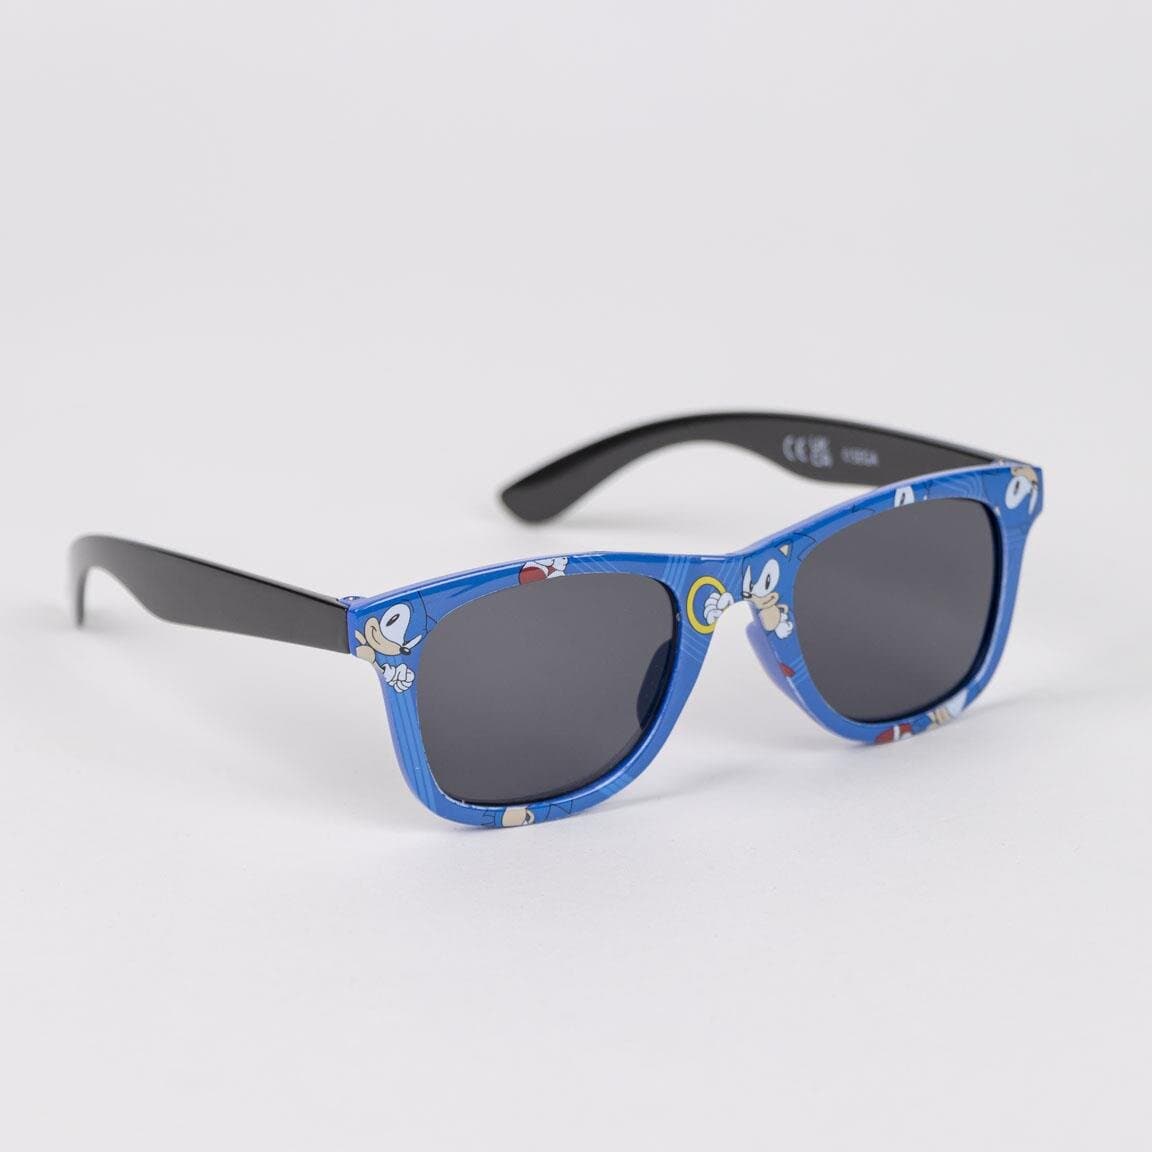 Sonic the Hedgehog - Kasket og solbriller til børn